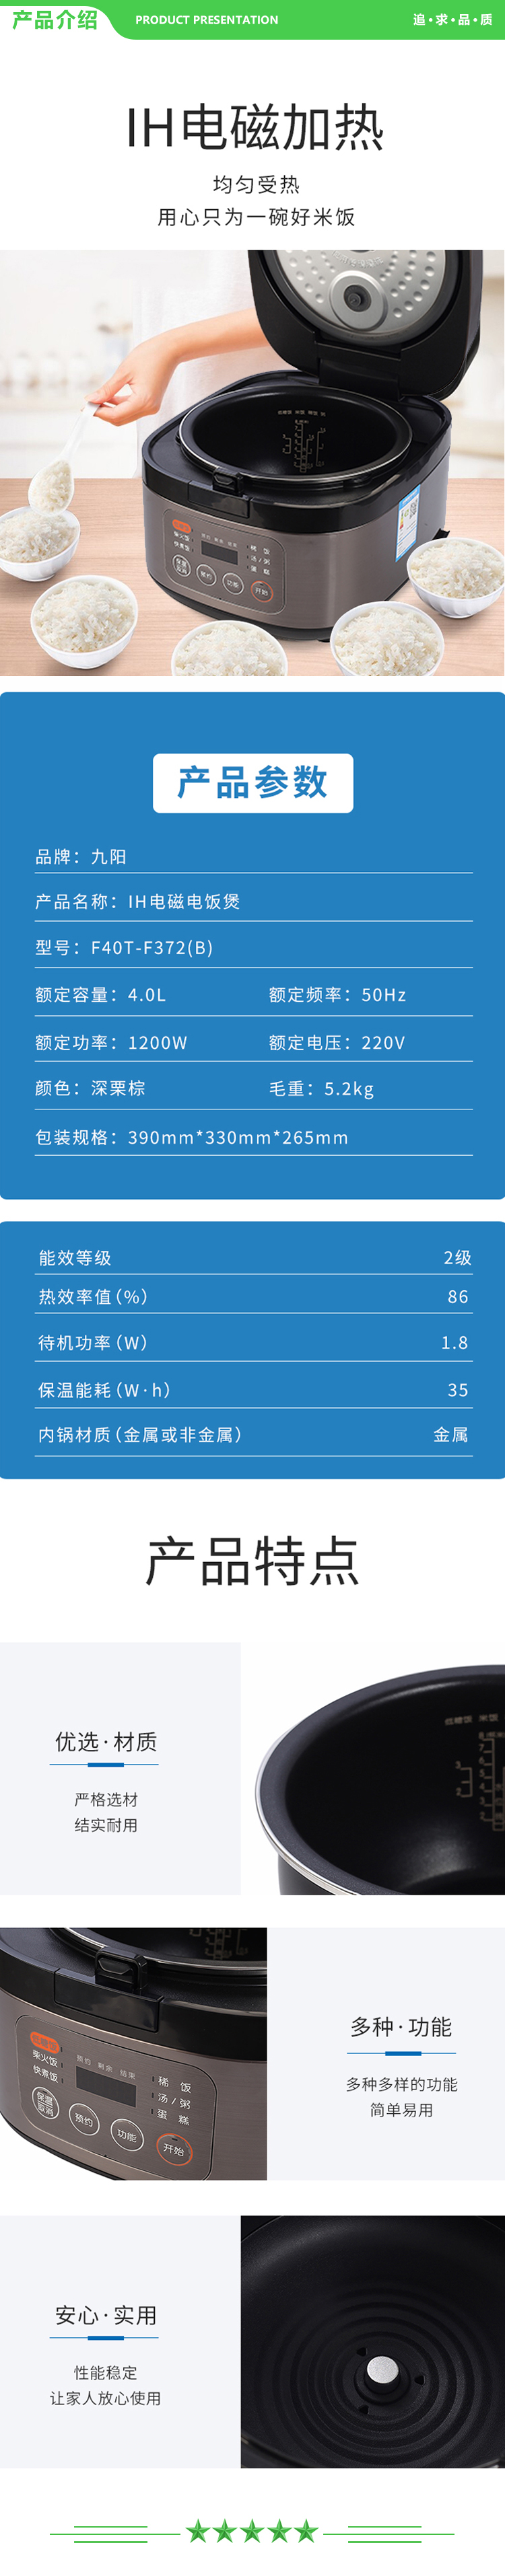 九阳 Joyoung F40T-F372(B) 电饭煲 2.jpg